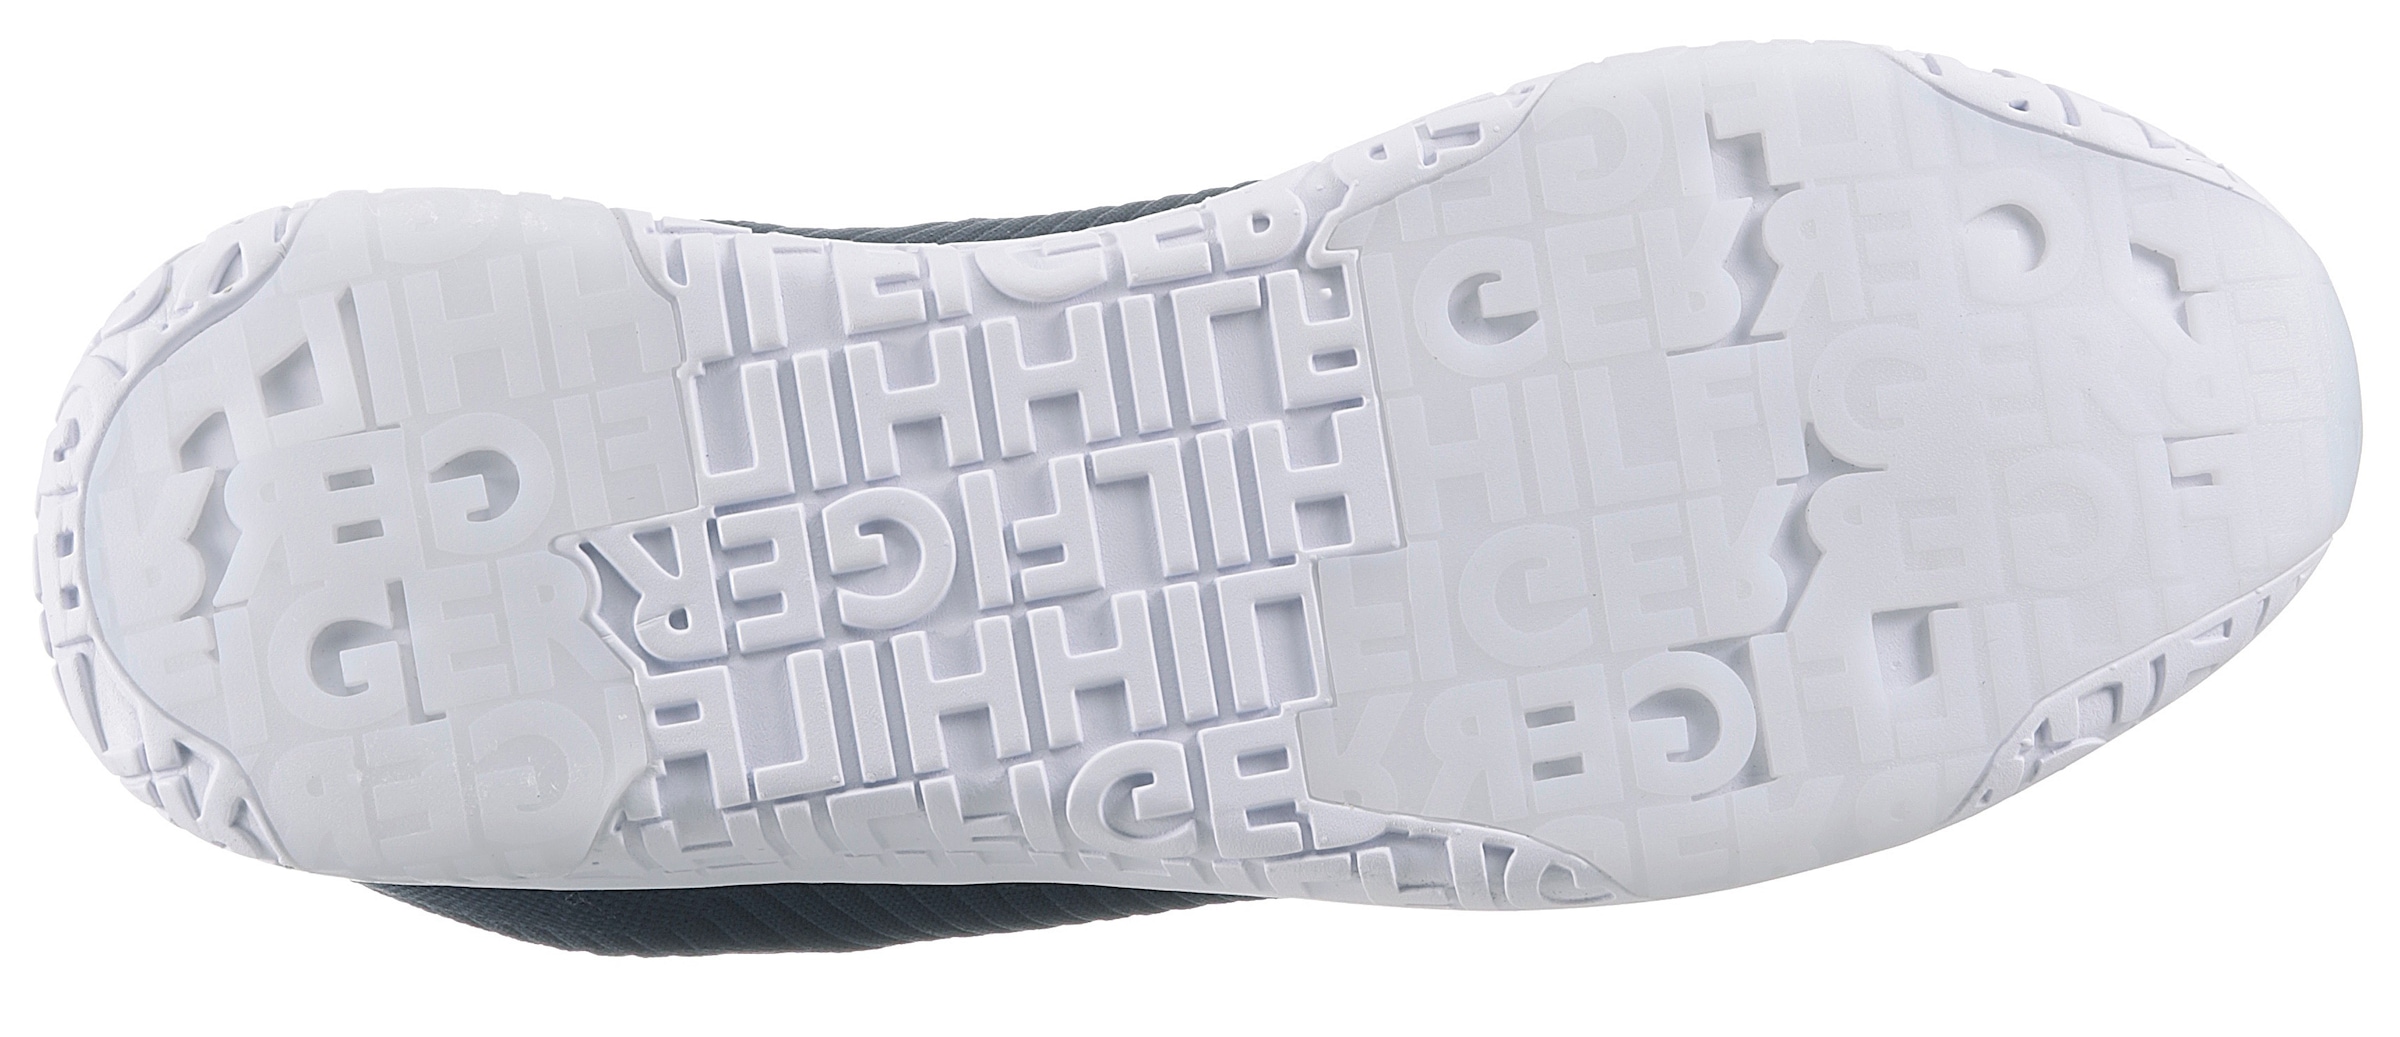 Tommy Hilfiger Sneaker »CORPORATE KNIT RIB RUNNER«, mit seitlicher Logoflagge, Freizeitschuh, Halbschuh, Schnürschuh